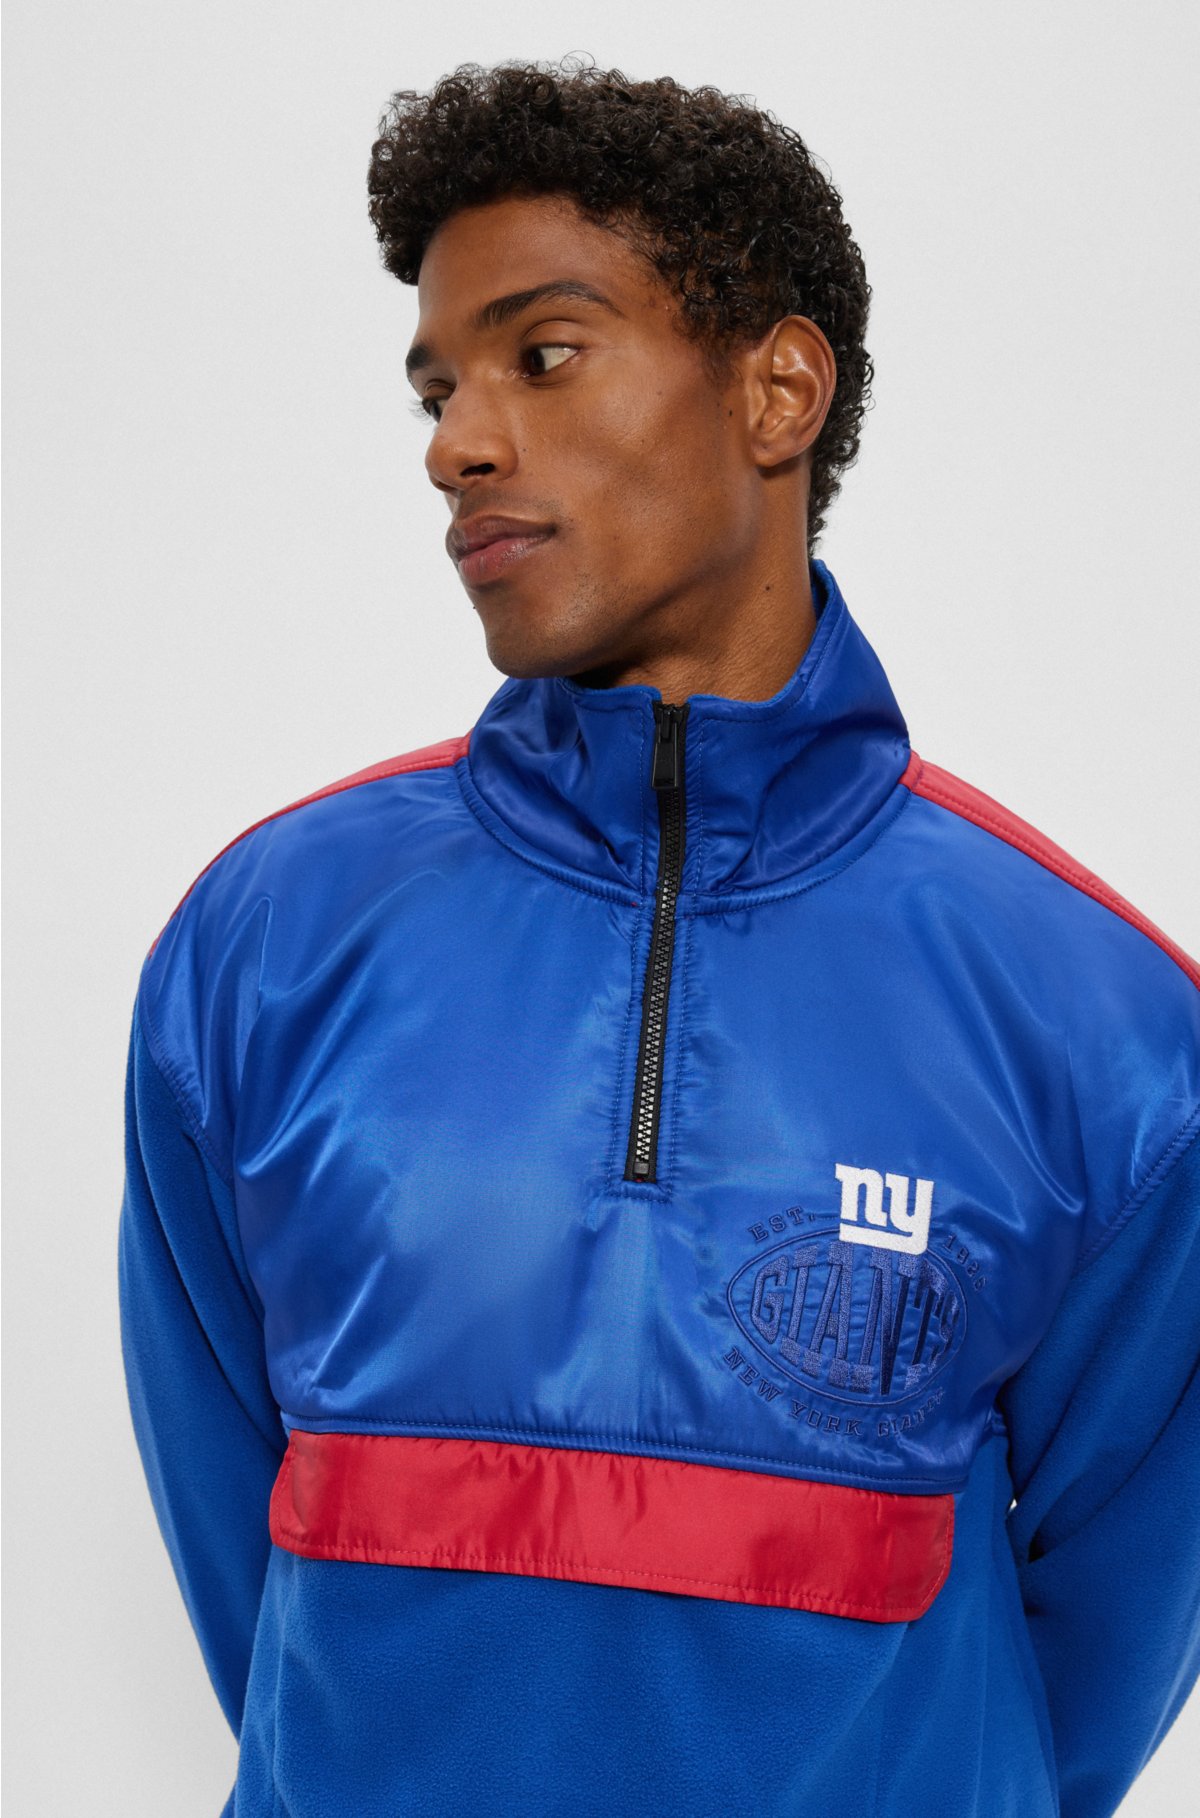  BOSS x NFL zip-neck sweatshirt with collaborative branding, Giants